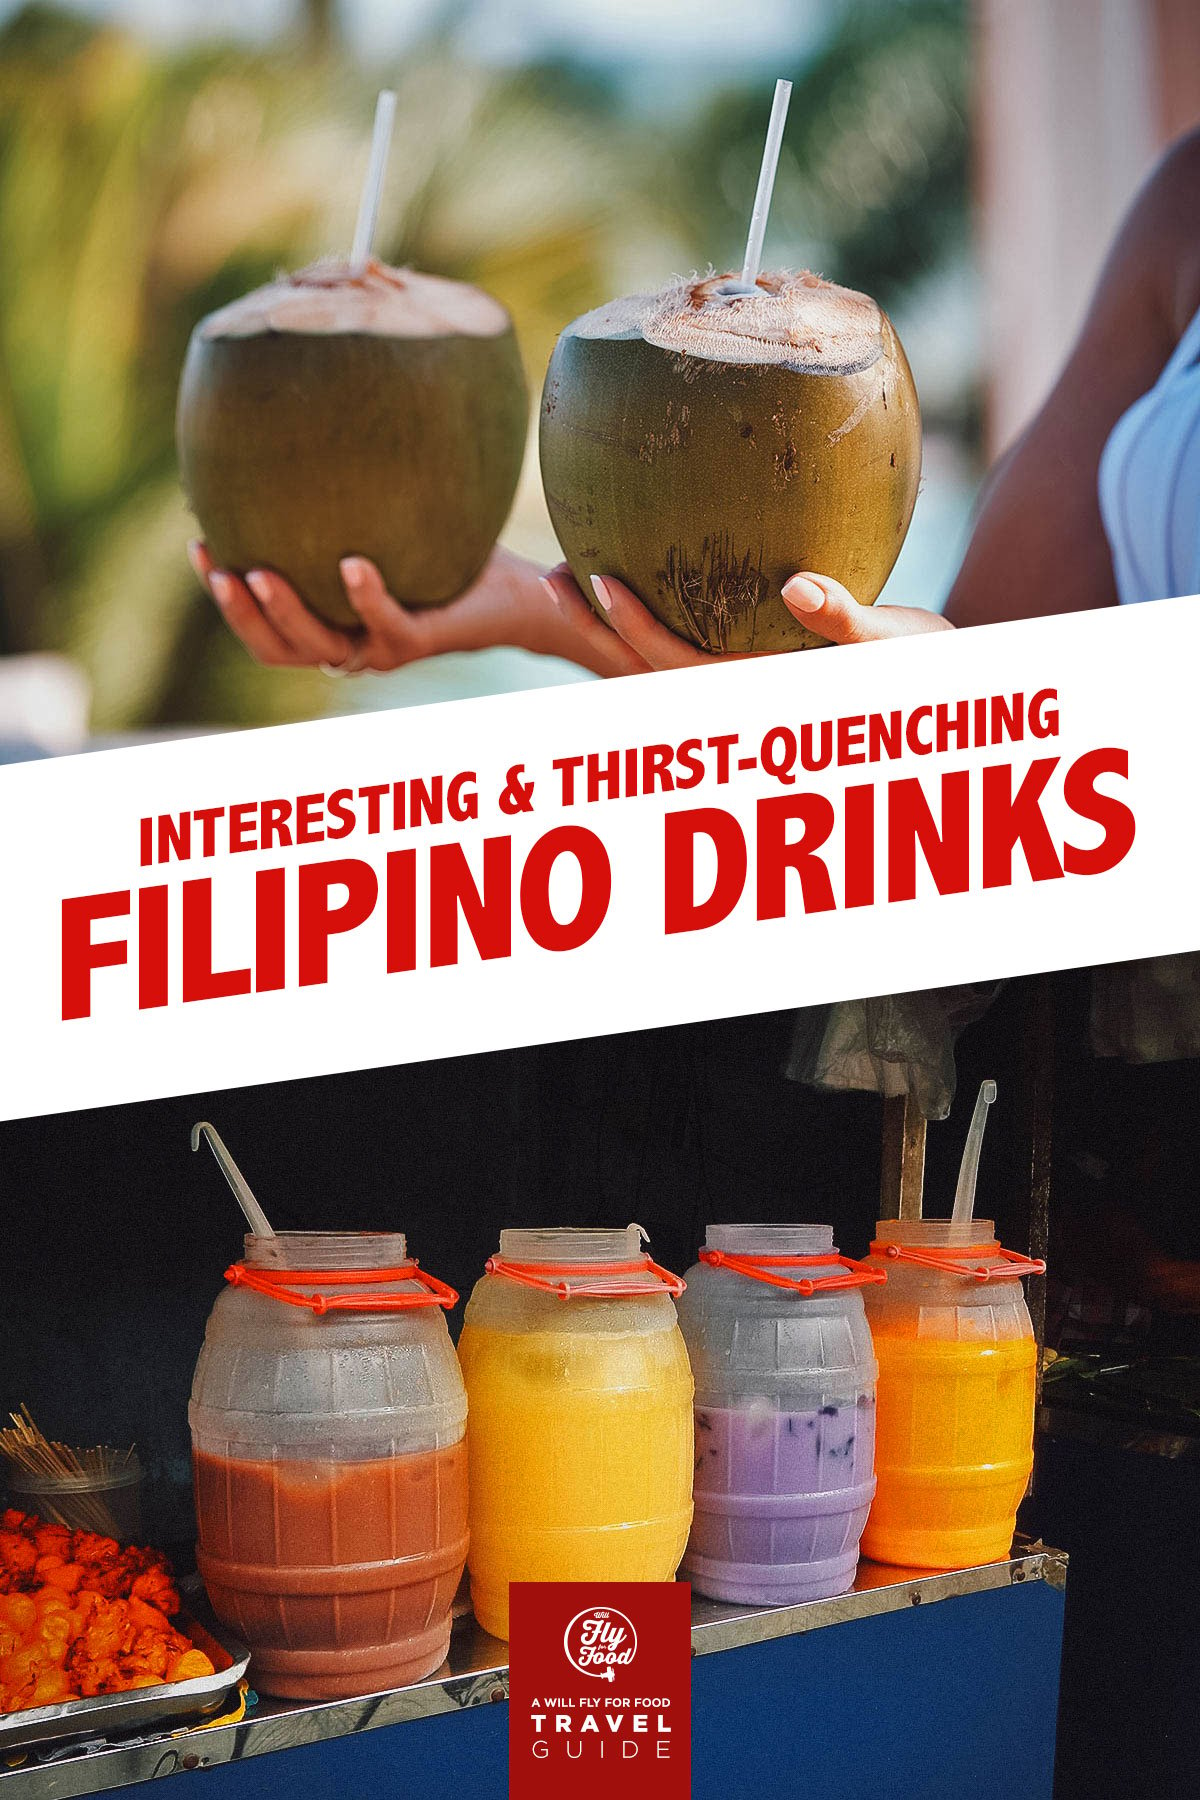 Filipino drinks